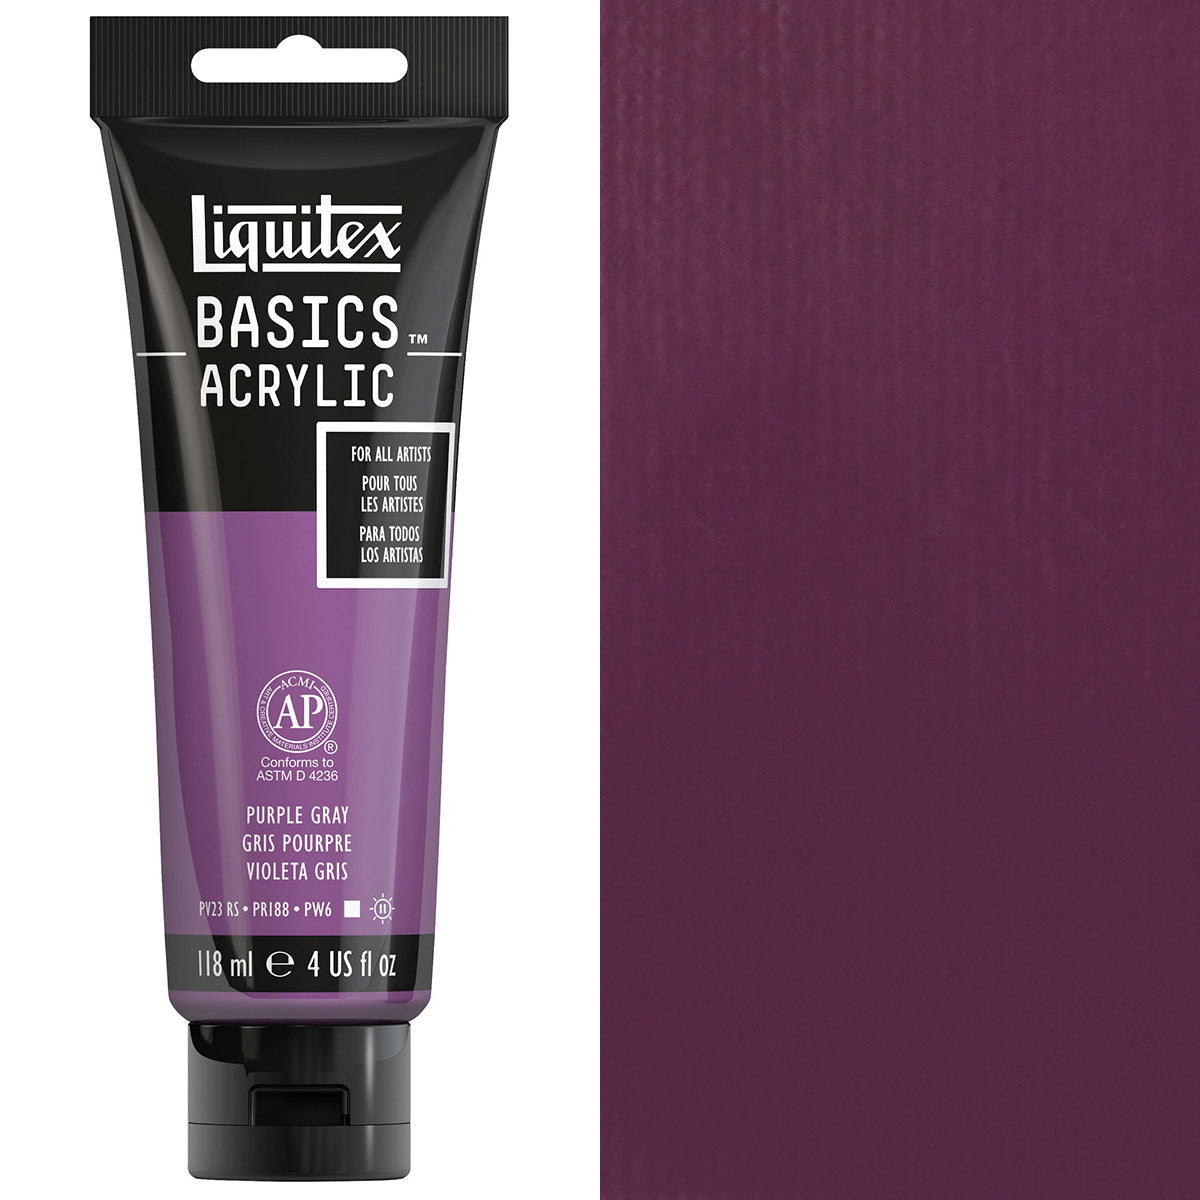 Liquitex-Couleur Acrylique Basics-118ml-Violet Gris